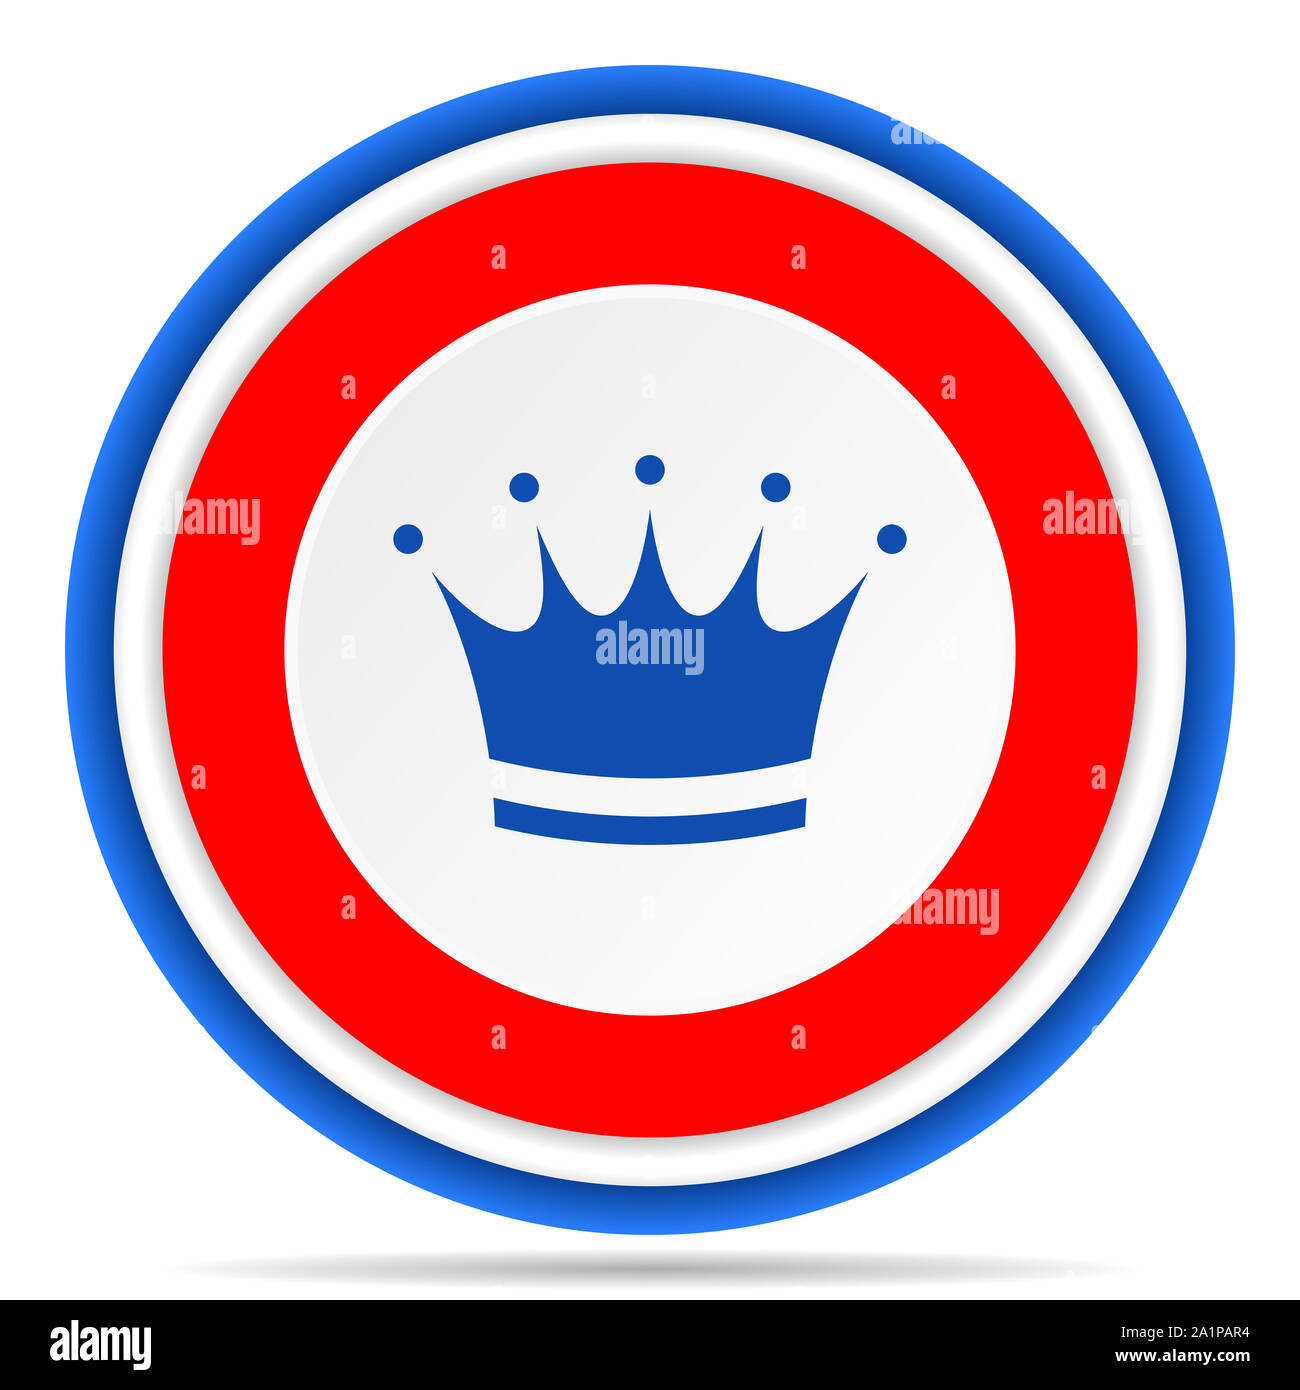 Crown round icona, rosso, blu e bianco design francese illustrazione per il web, internet e applicazioni per dispositivi mobili Foto Stock